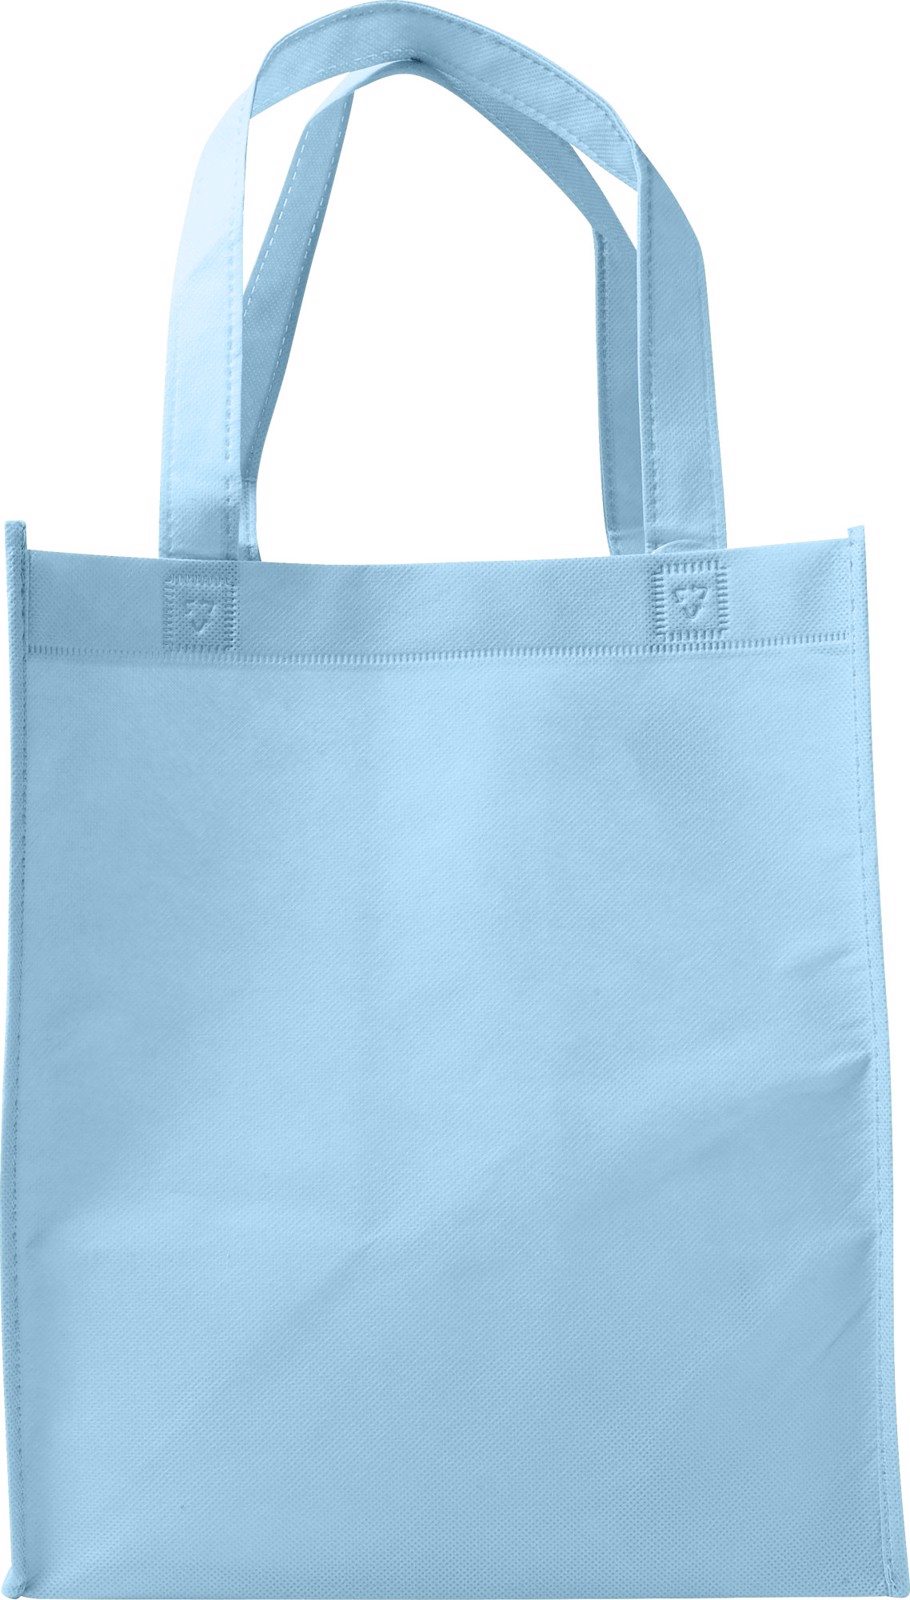 Nonwoven (80 gr/m²) shopping bag. - Light Blue